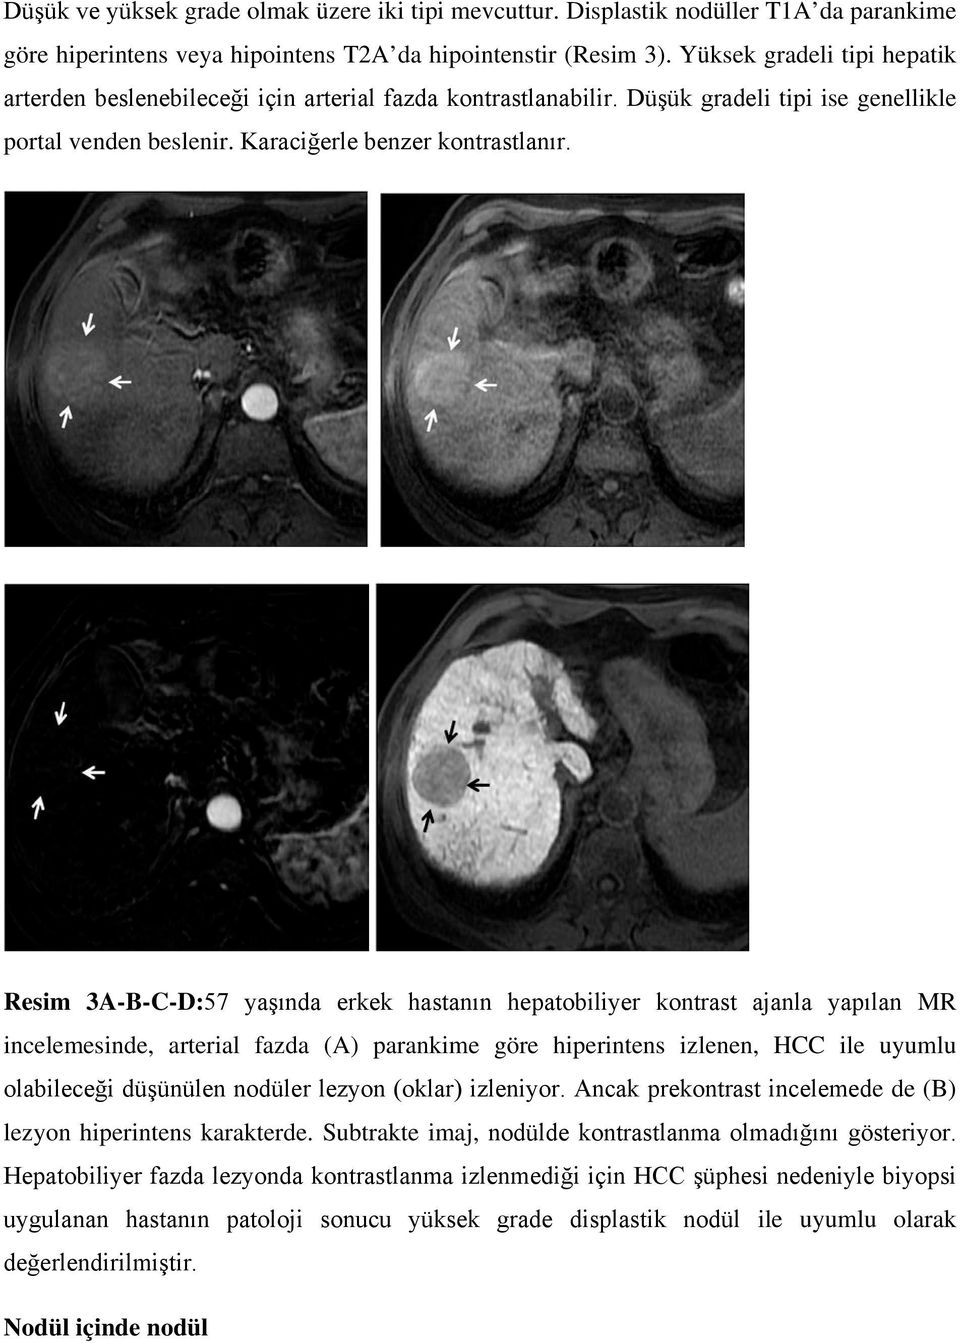 Resim 3A-B-C-D:57 yaşında erkek hastanın hepatobiliyer kontrast ajanla yapılan MR incelemesinde, arterial fazda (A) parankime göre hiperintens izlenen, HCC ile uyumlu olabileceği düşünülen nodüler